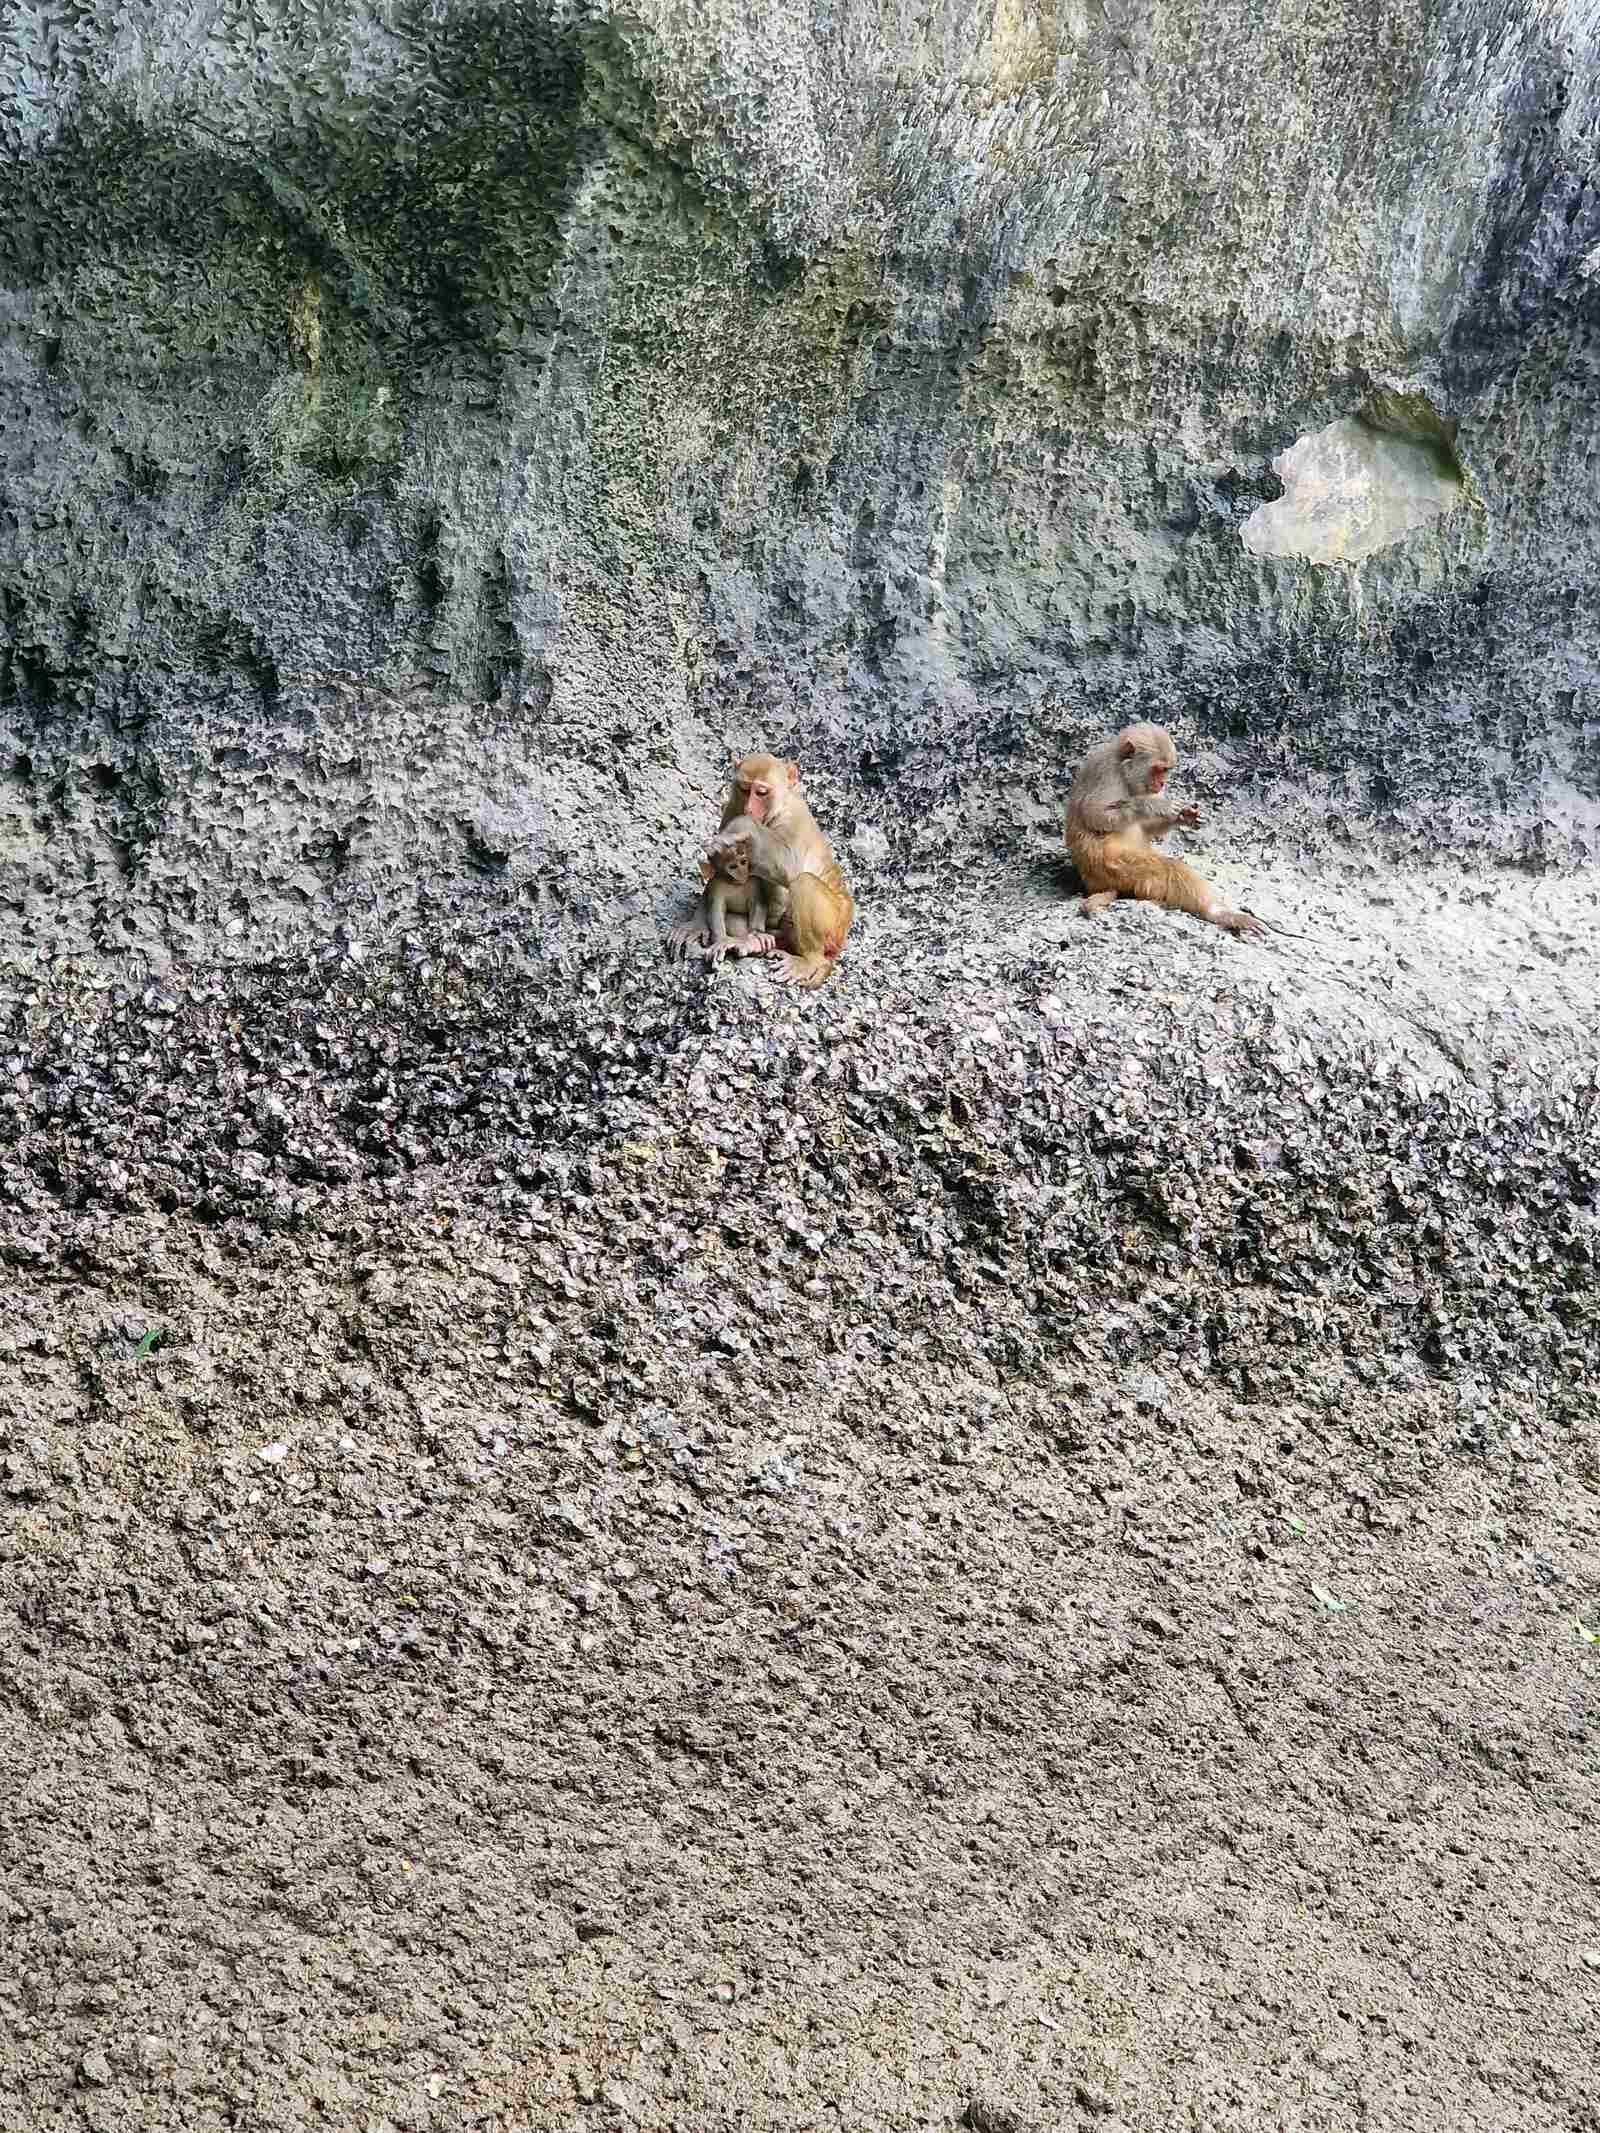 monkeys sitting on a rock